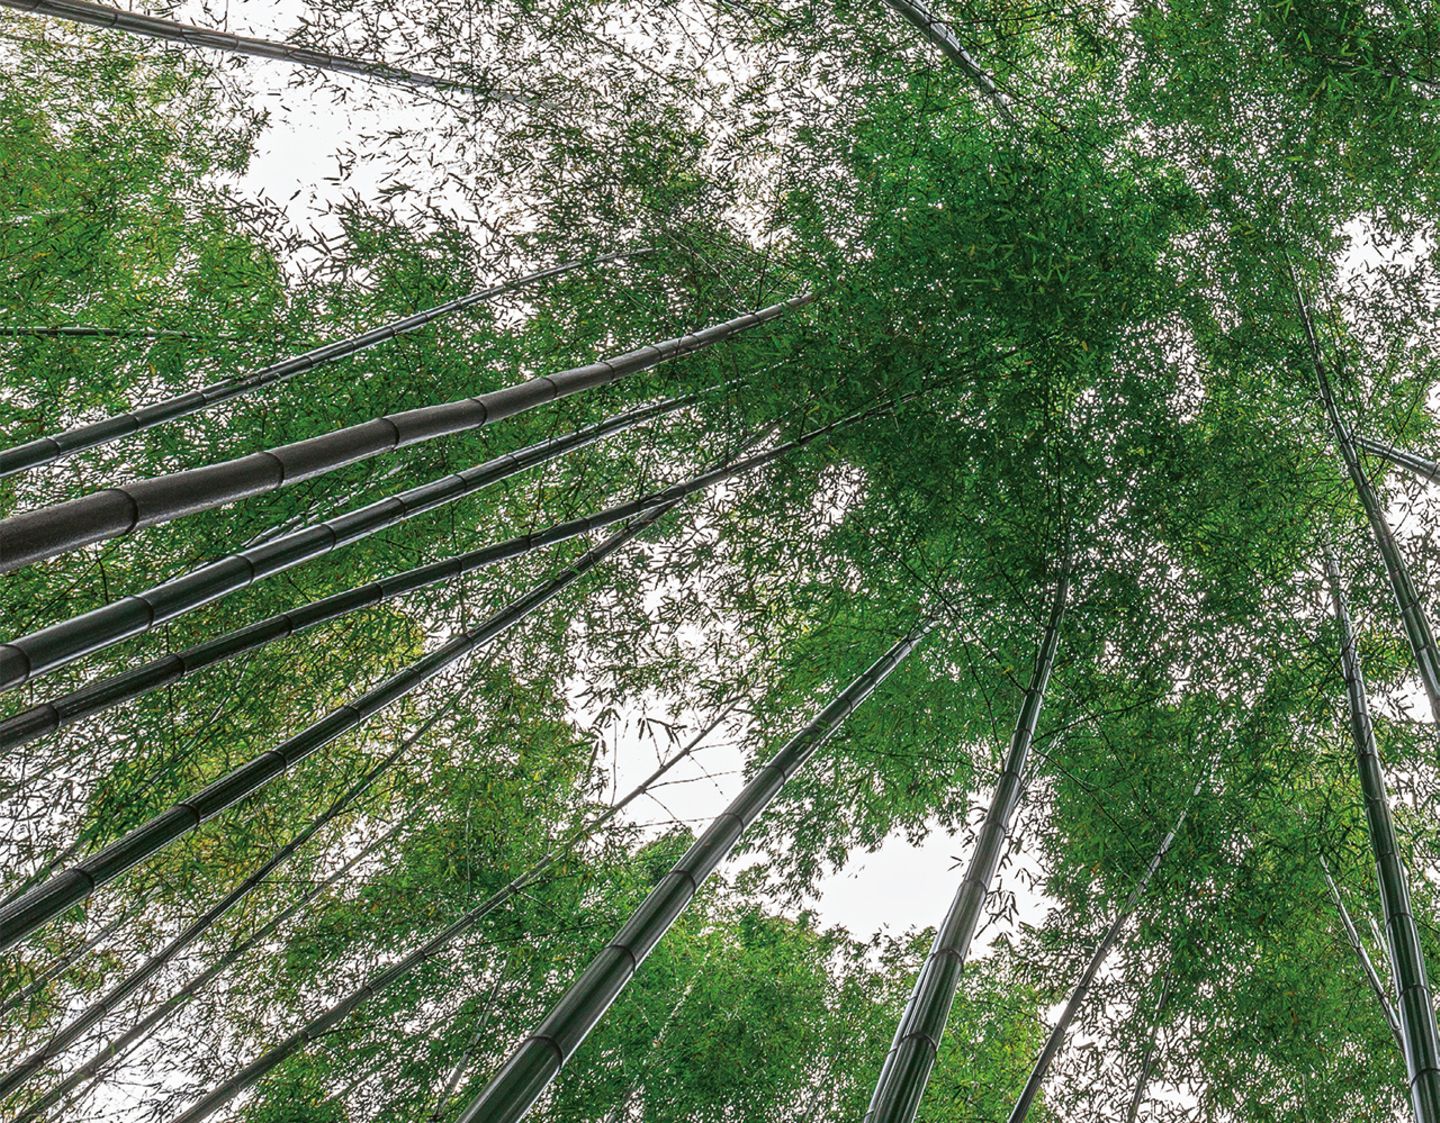 Bambuswald in der Provinz Sichuan